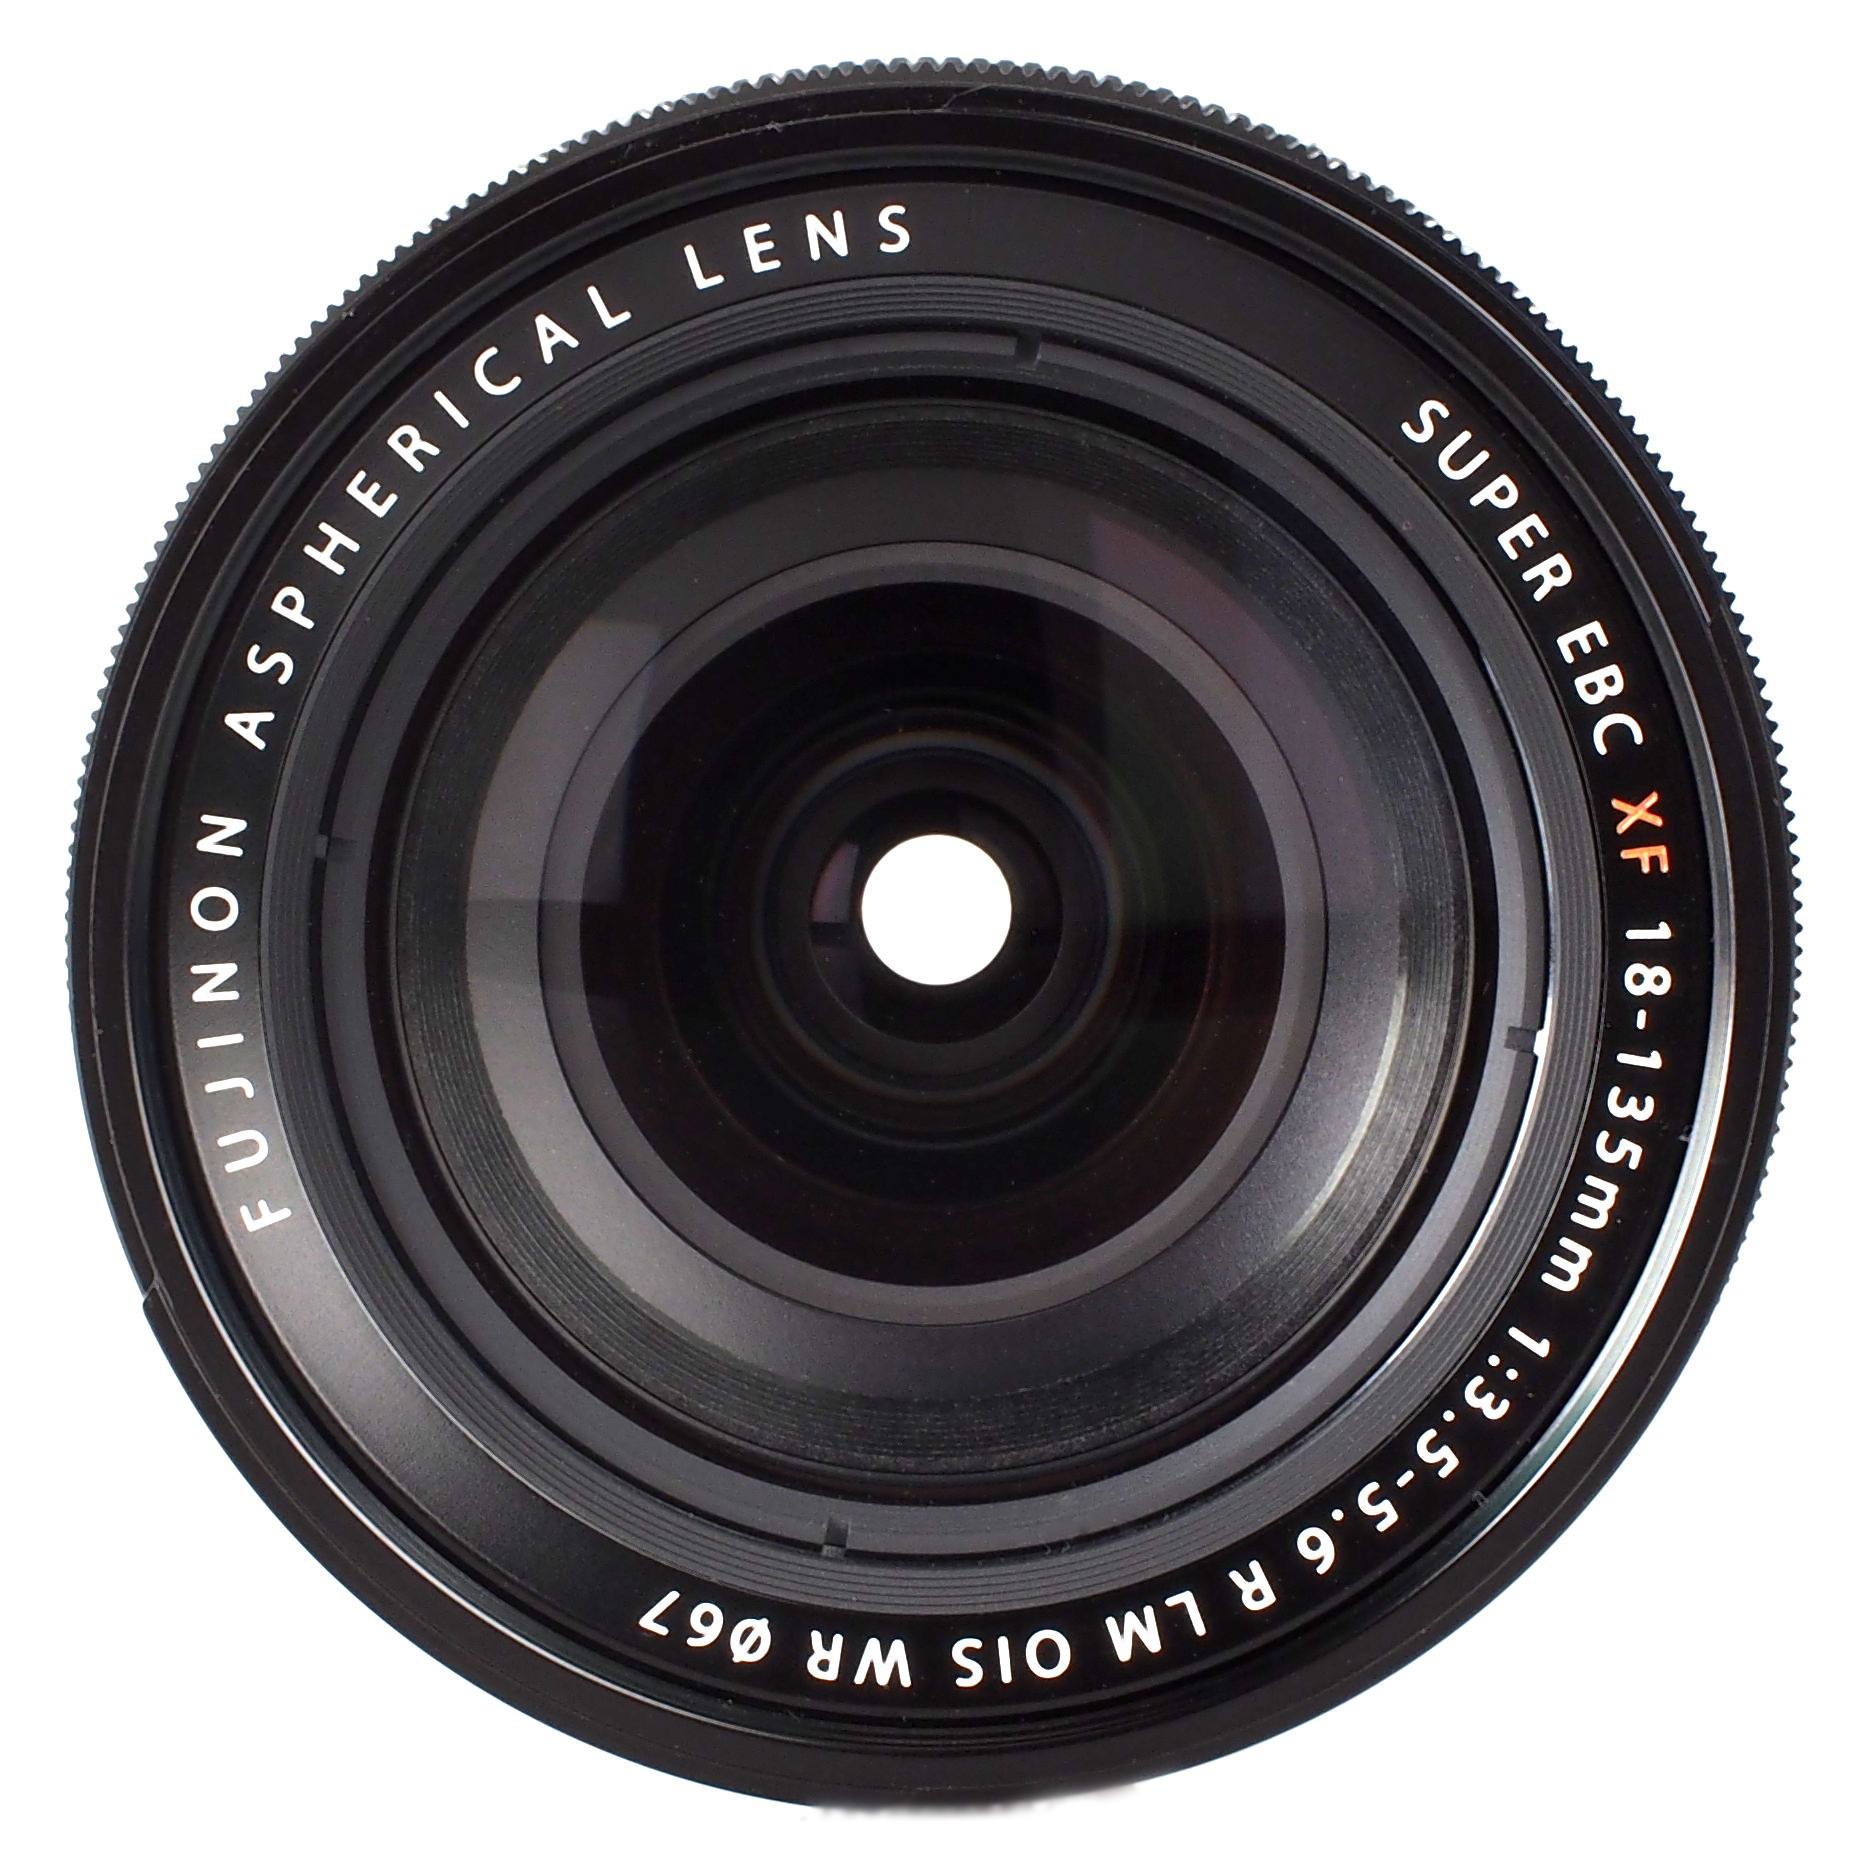 Fujifilm XF 18-135mm f3.5-5.6 R LM OIS WR Lens